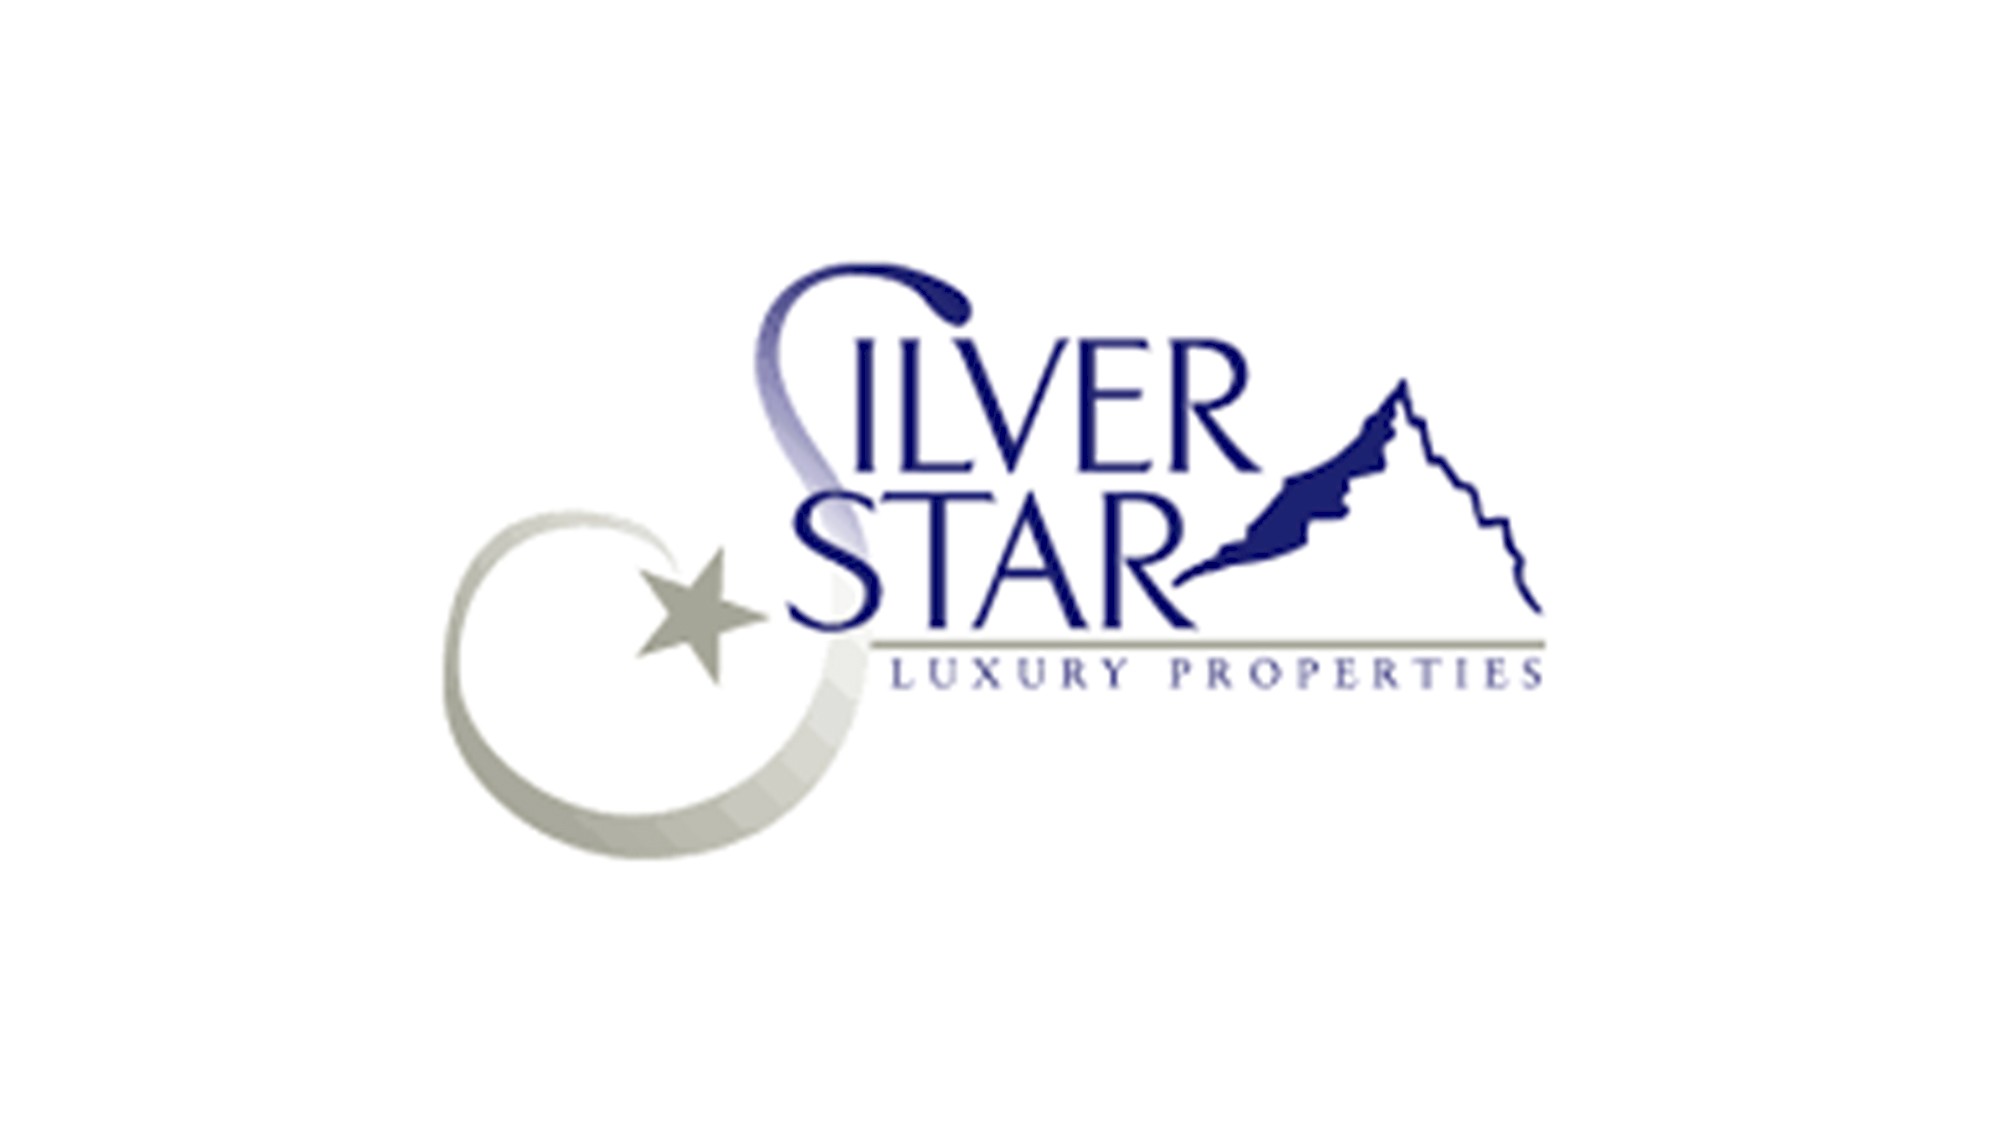 SilverStar Luxury Properties